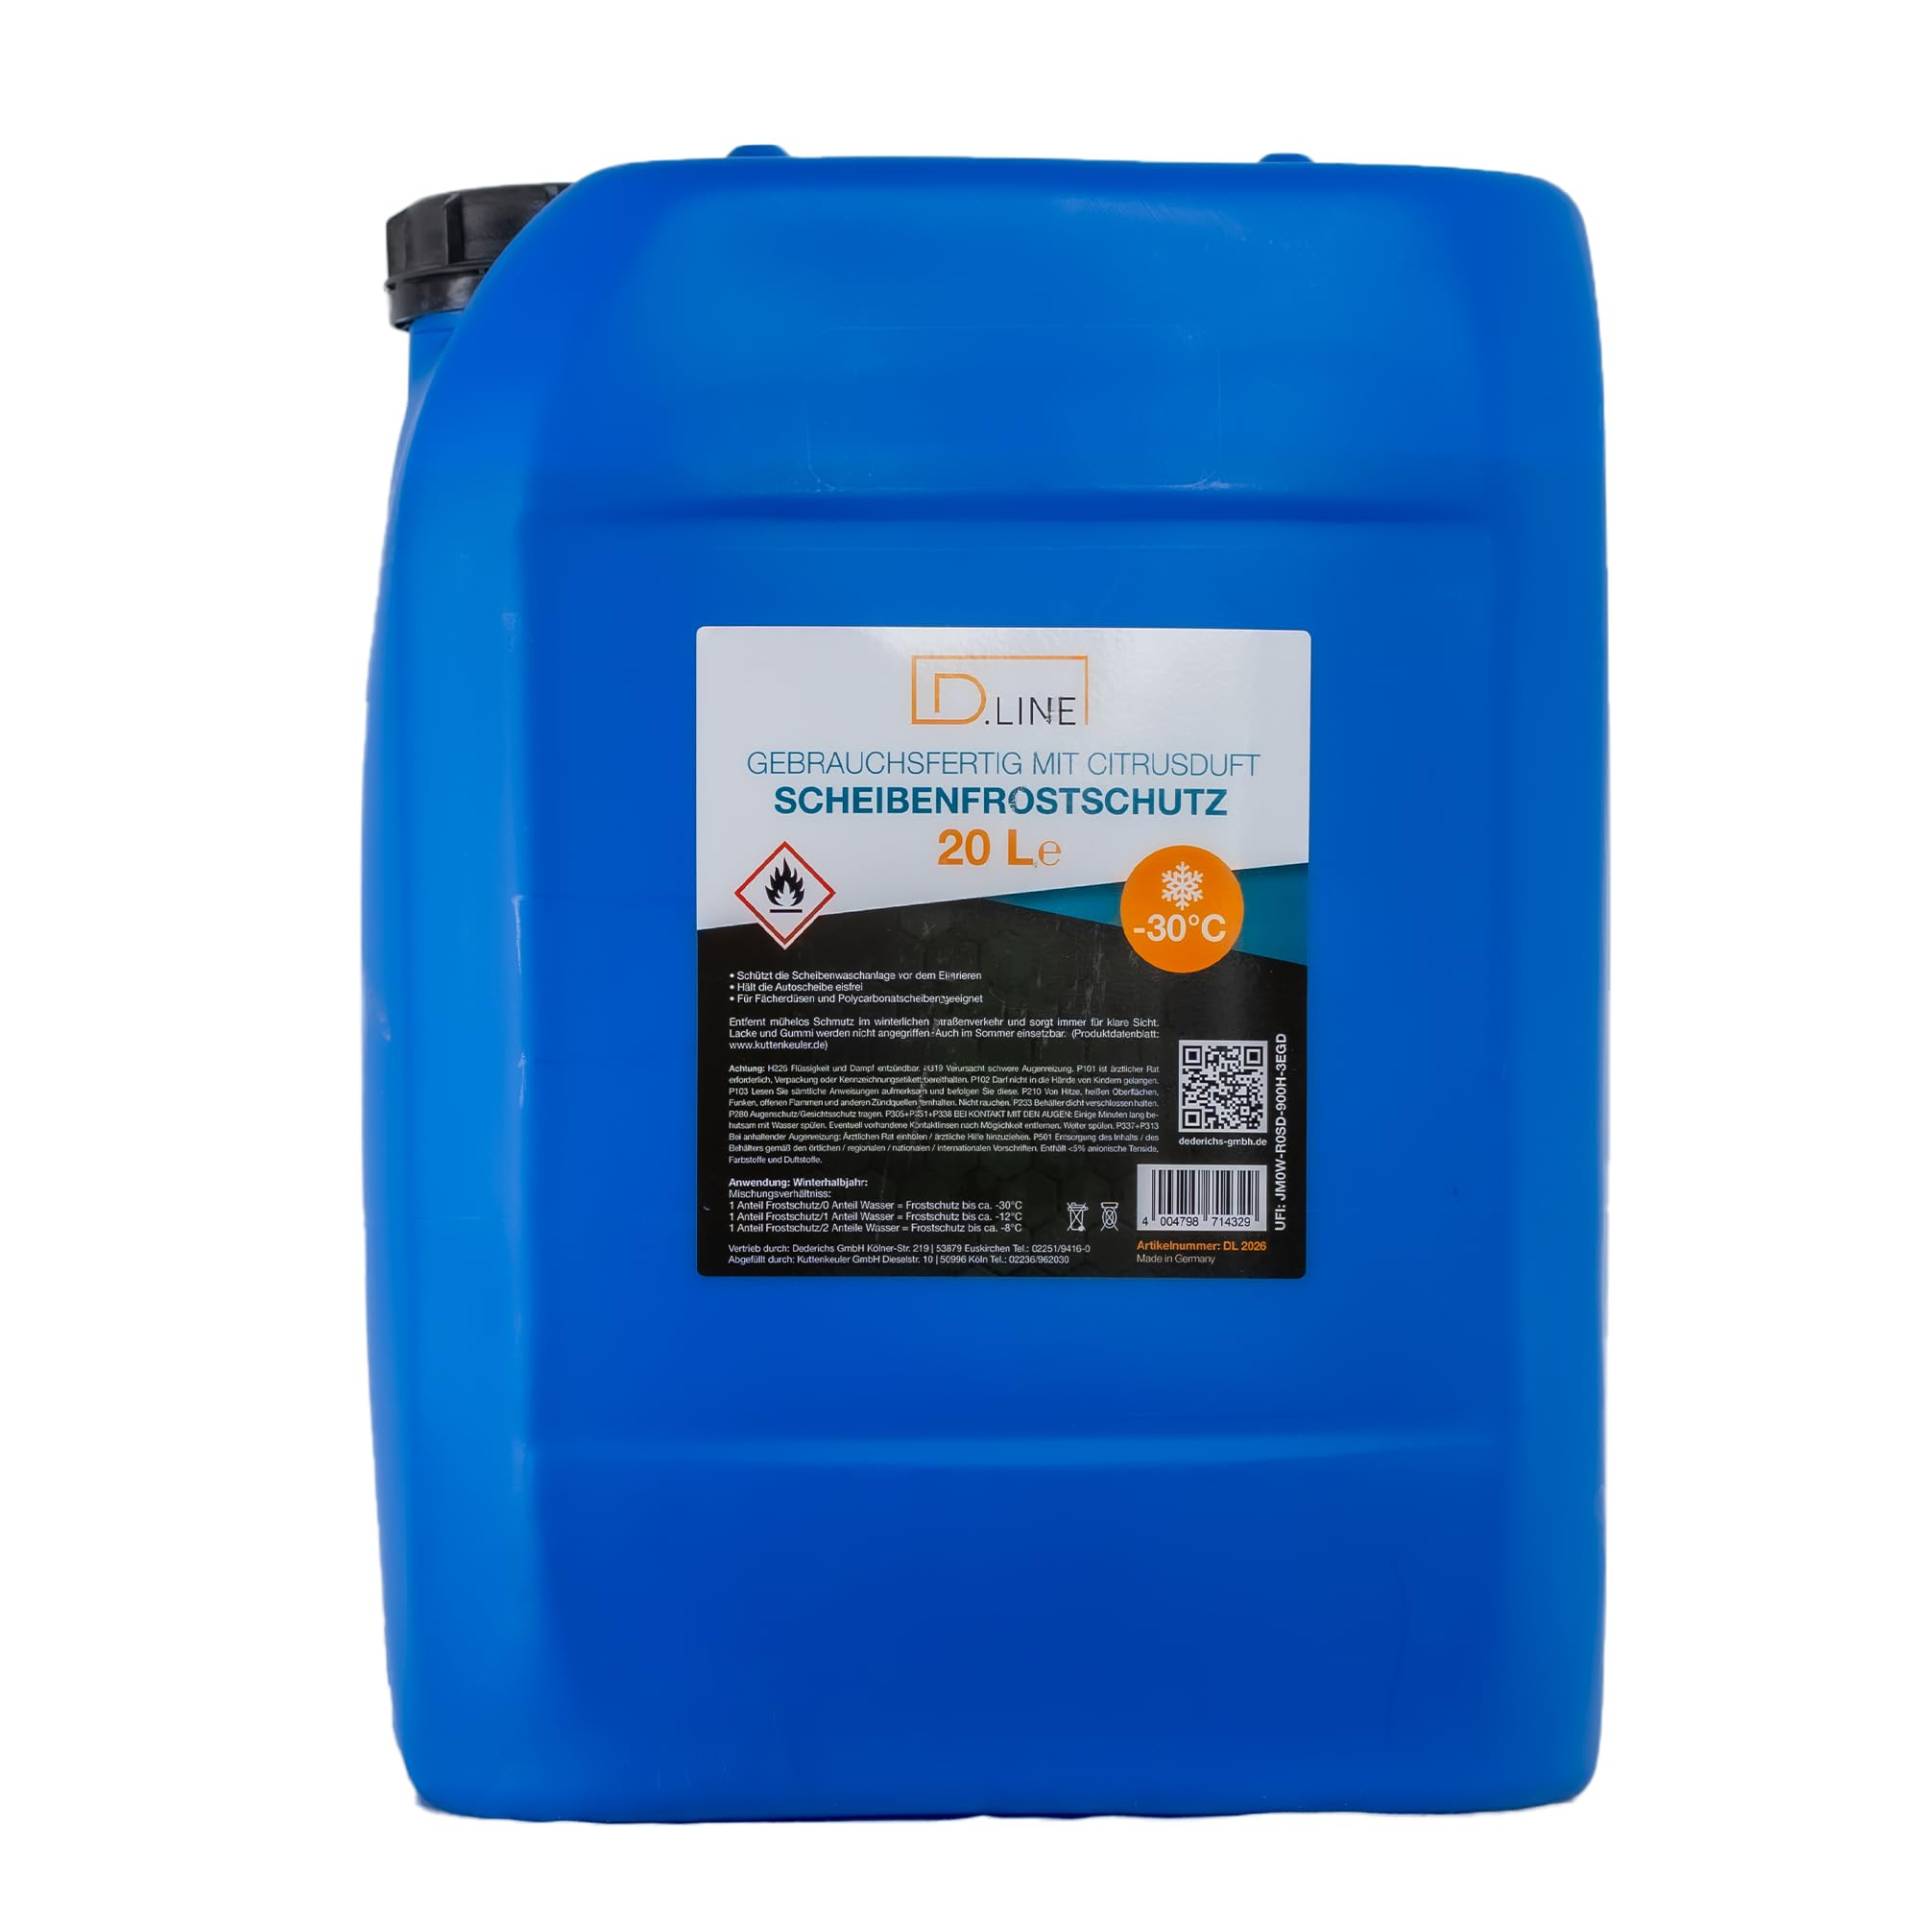 D.LINE Scheibenfrostschutz gebrauchsfertig mit Citrusduft-30°C, 20 Liter von D.LINE